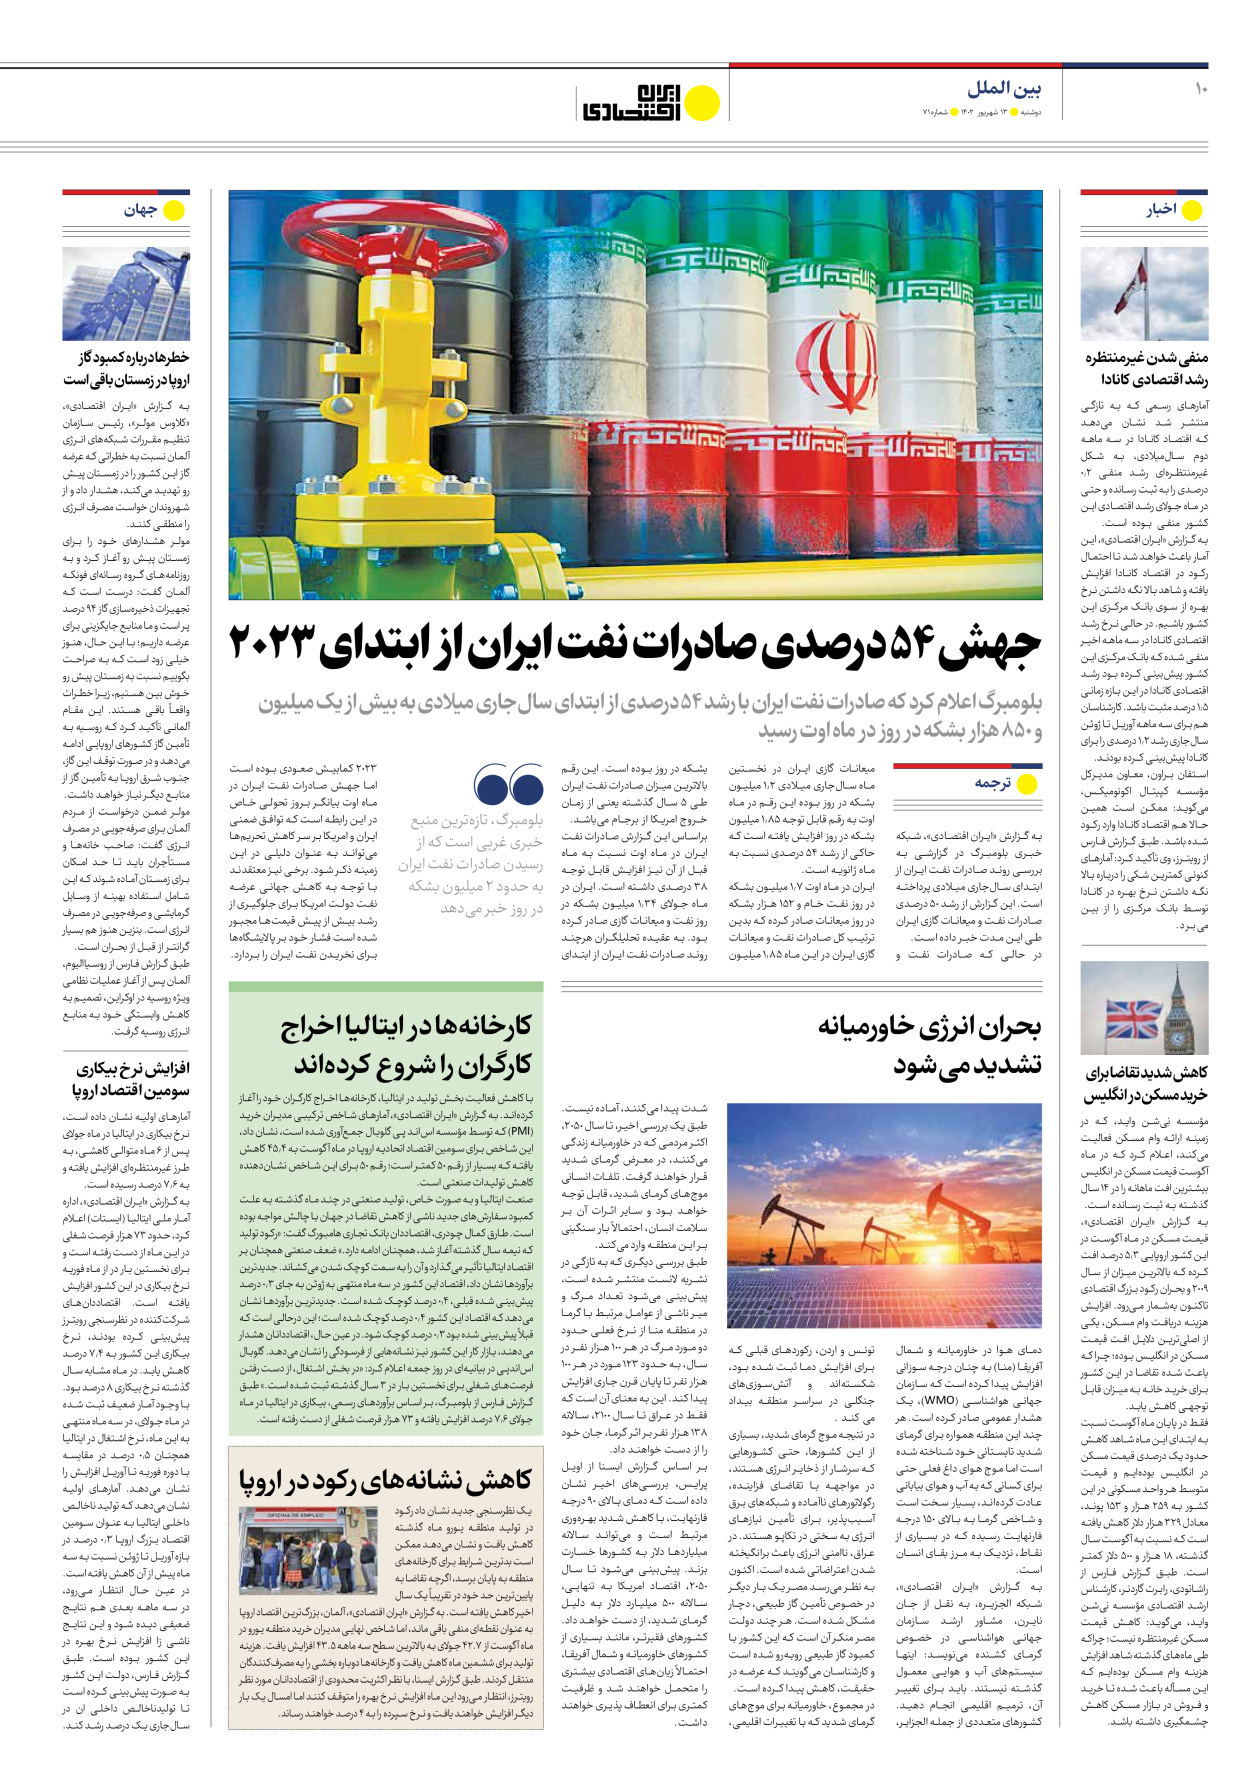 روزنامه ایران اقتصادی - شماره هفتاد و یک - ۱۳ شهریور ۱۴۰۲ - صفحه ۱۰